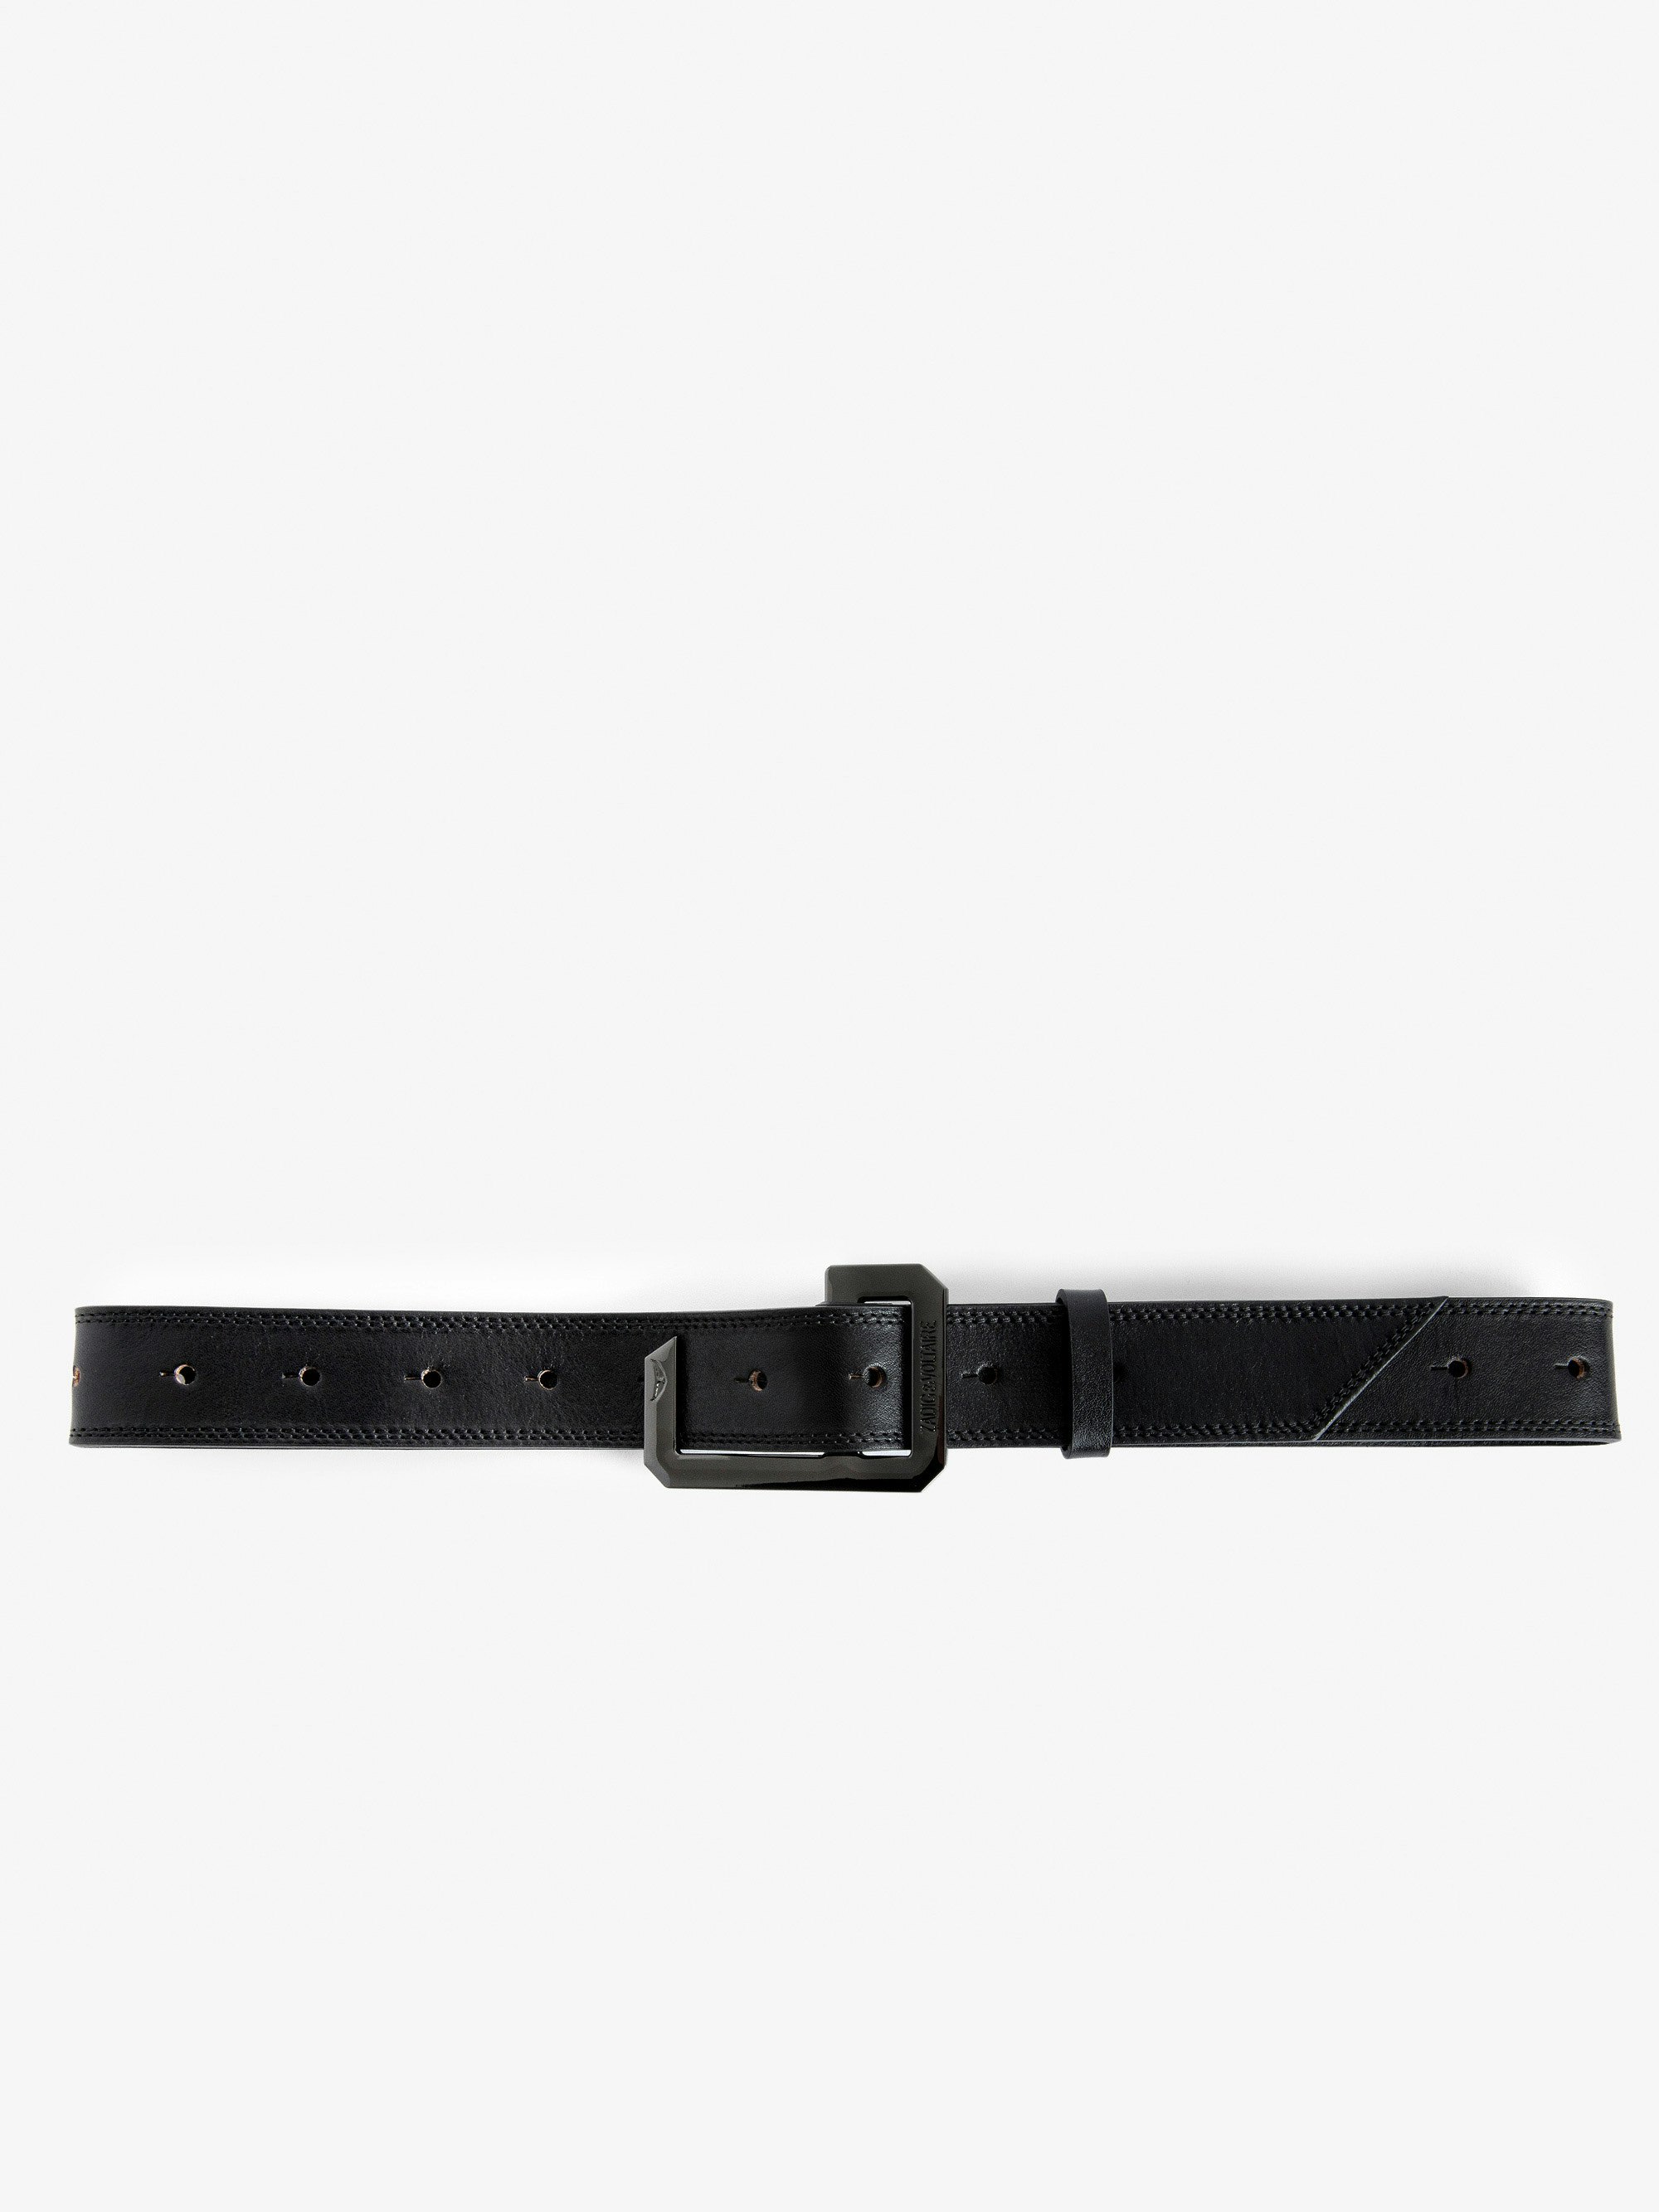 Cinturón La Cecilia - Cinturón negro ajustable de piel de curtiduría vegetal con hebilla en C.